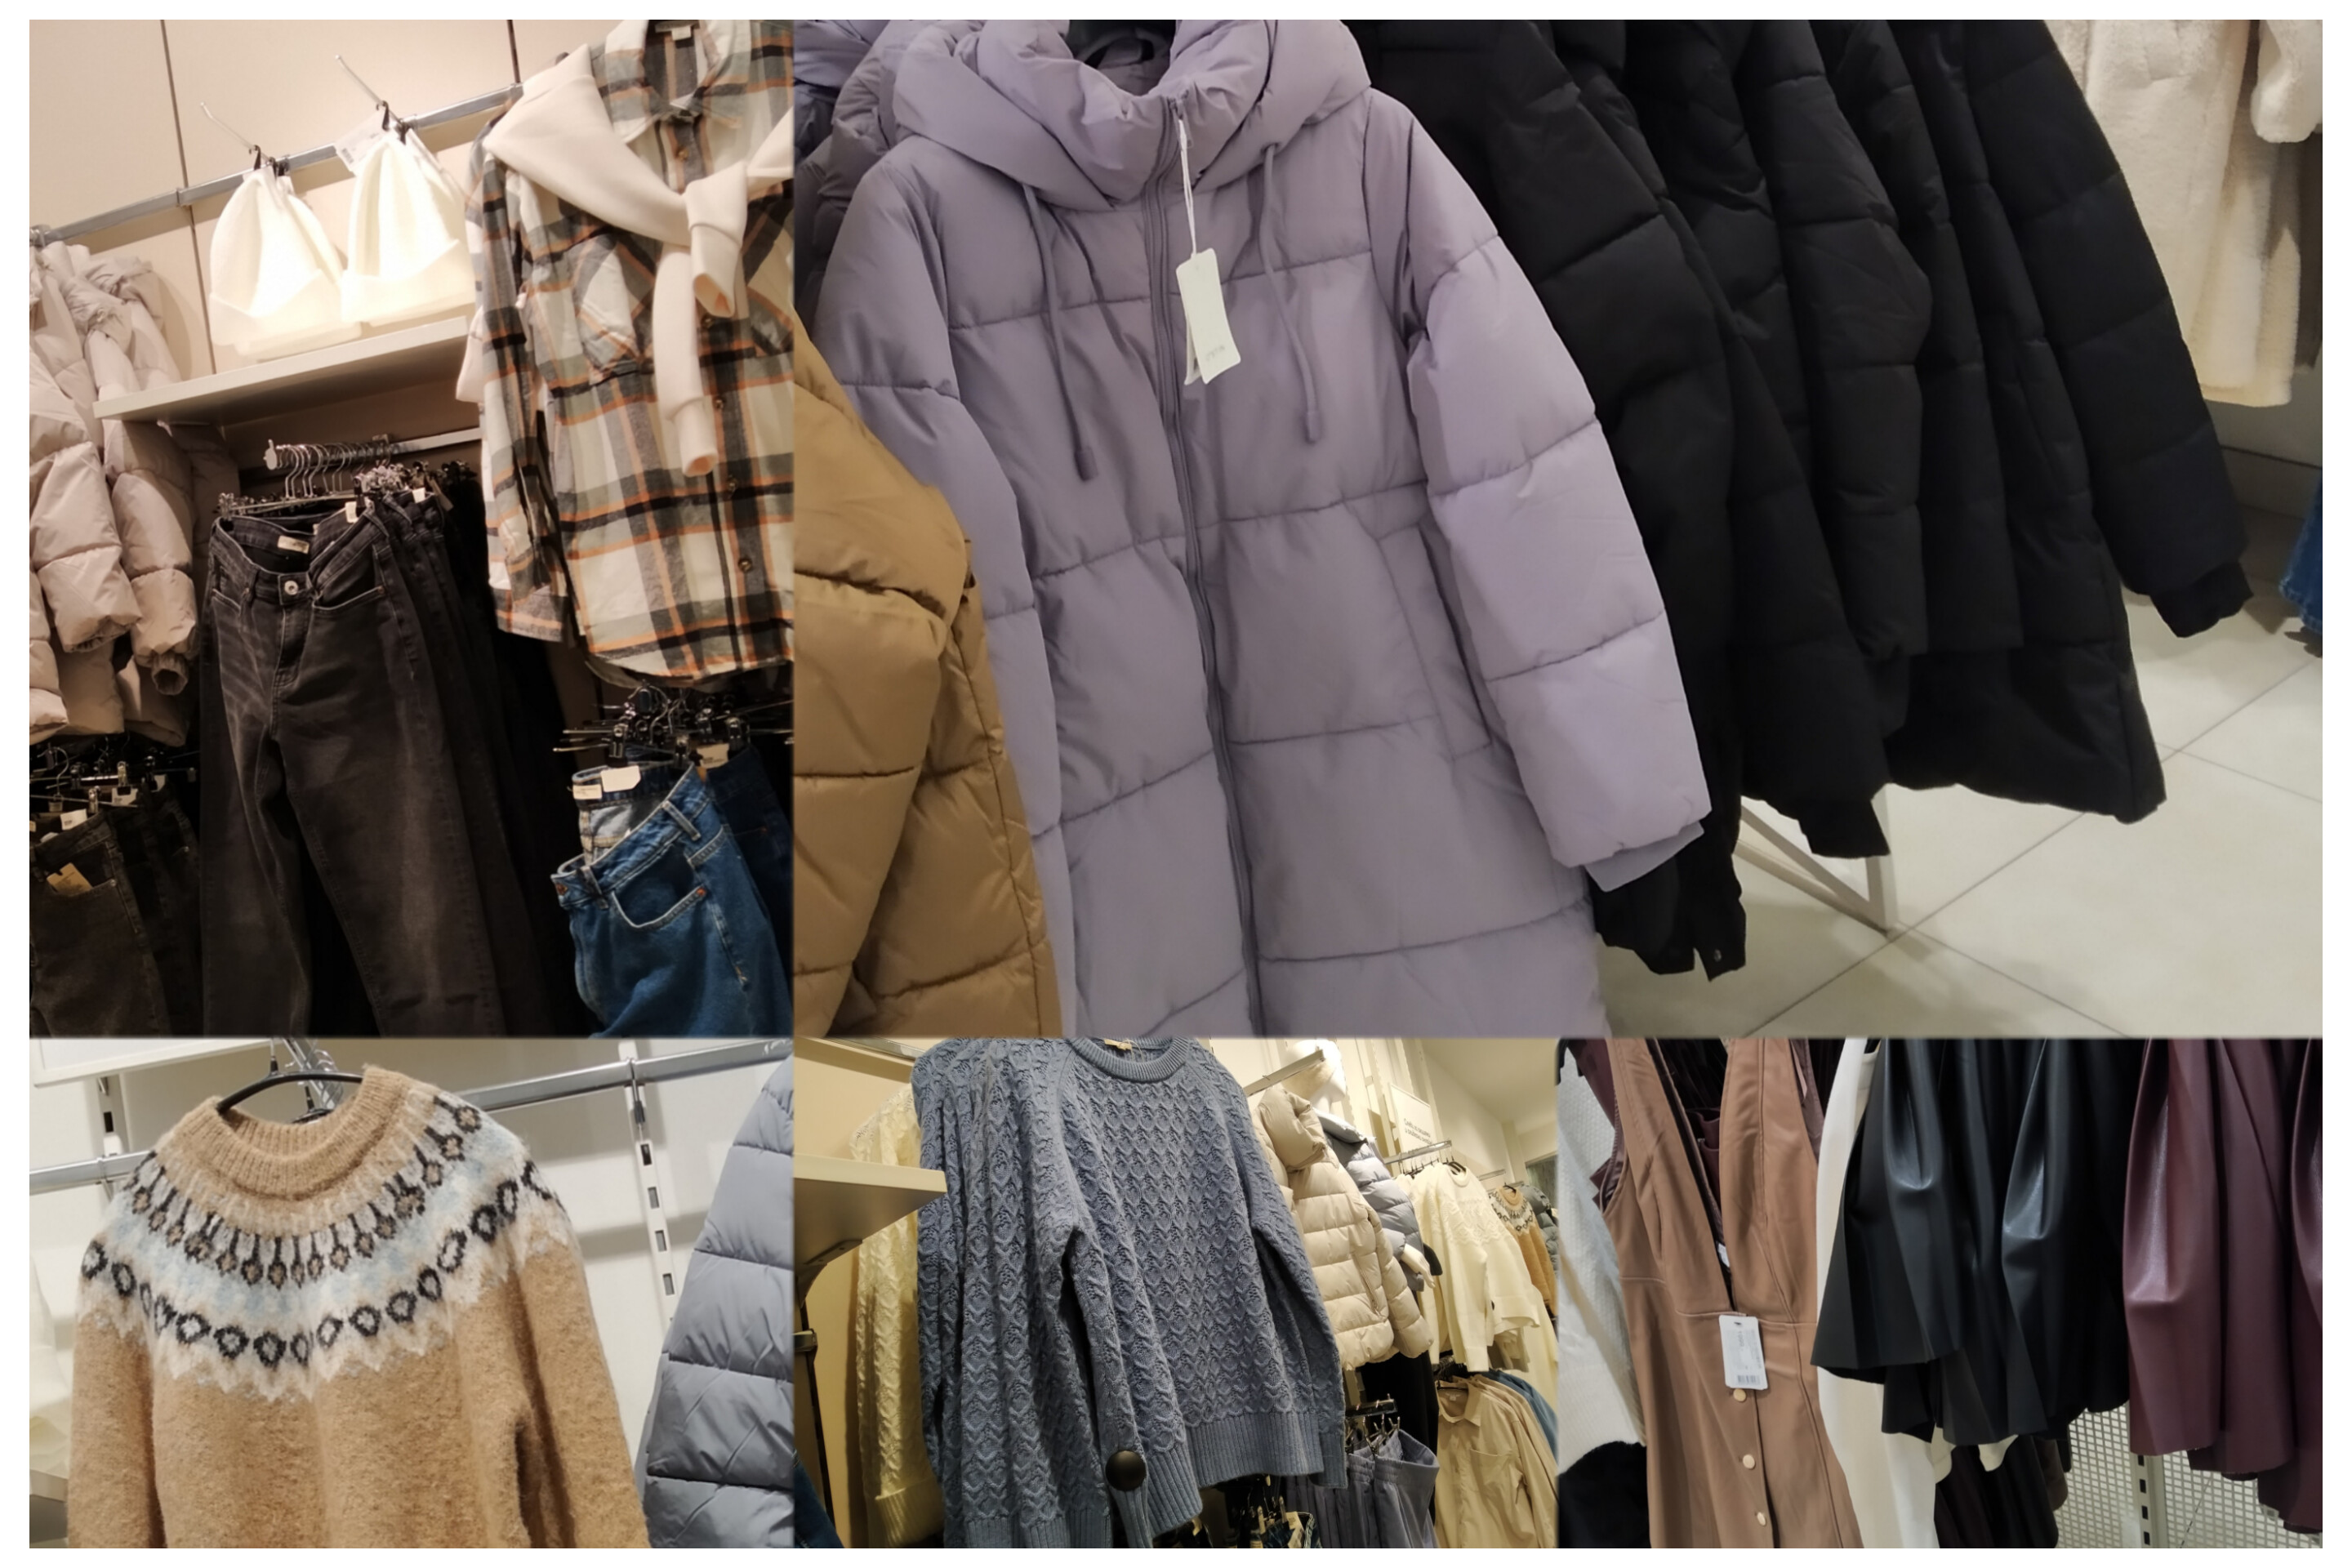 Красивая зимняя одежда в магазине Остин куртки, свитера, брюки, рубашки, платья, костюмы, цены.